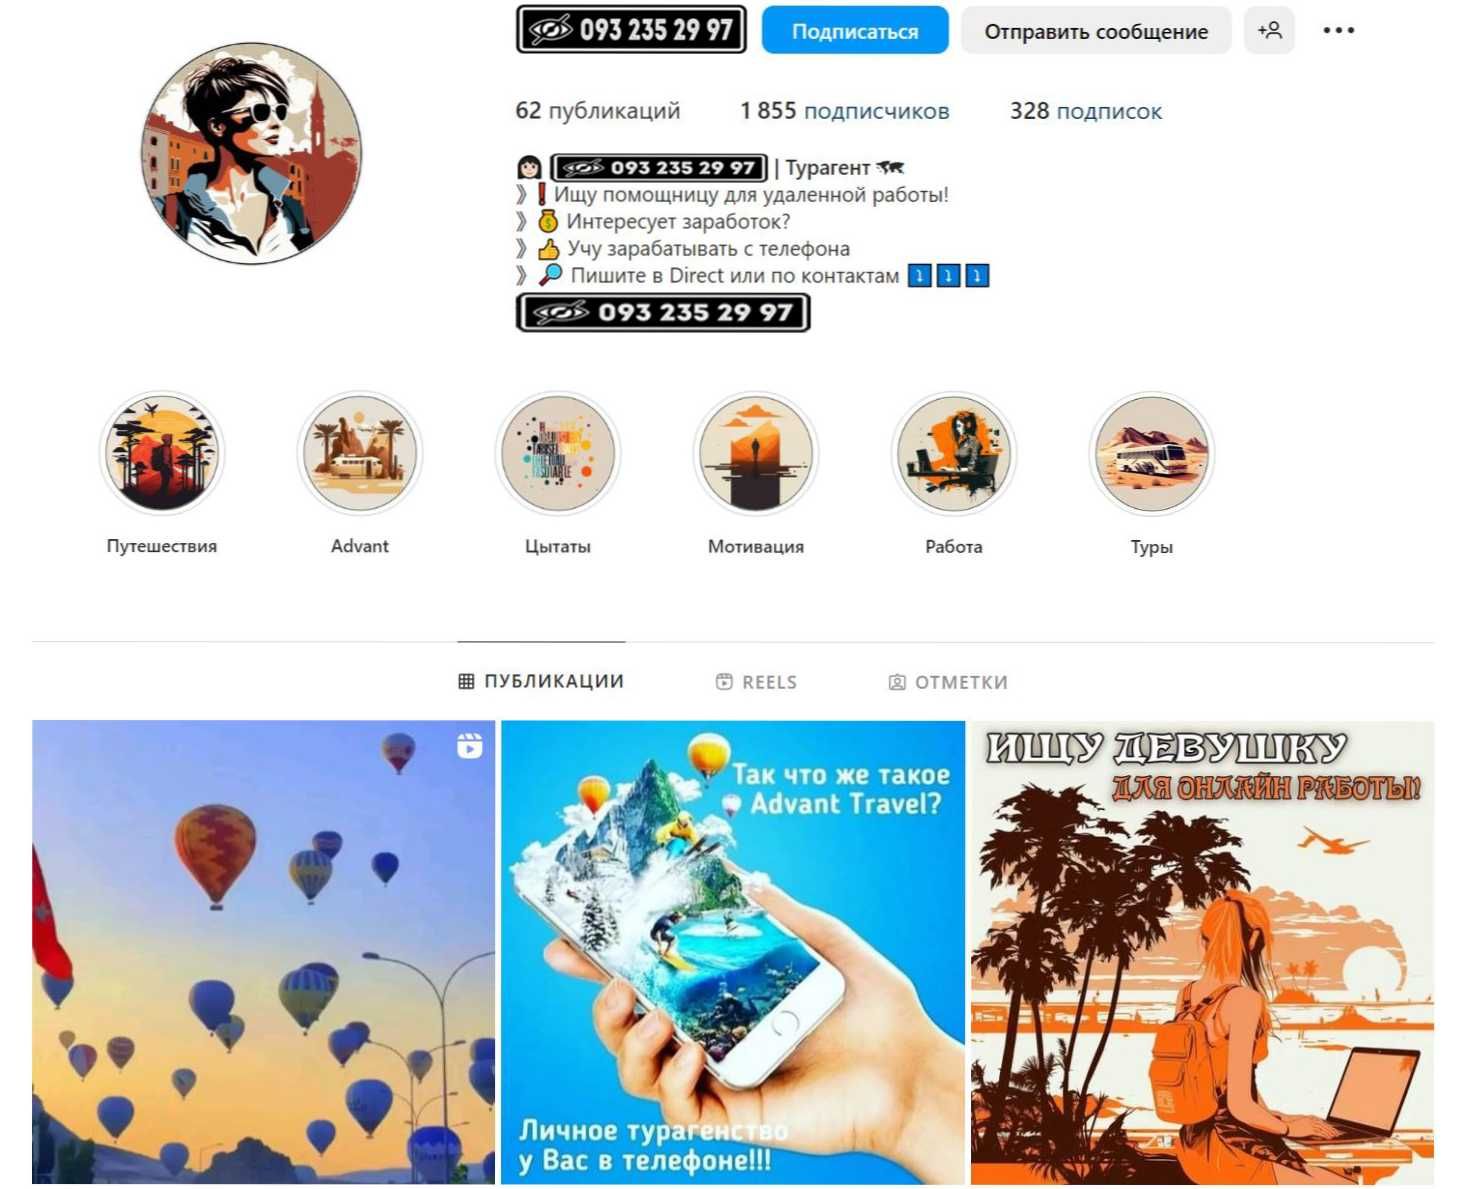 Индивидуальный дизайн для Вашей страницы в Instagram!